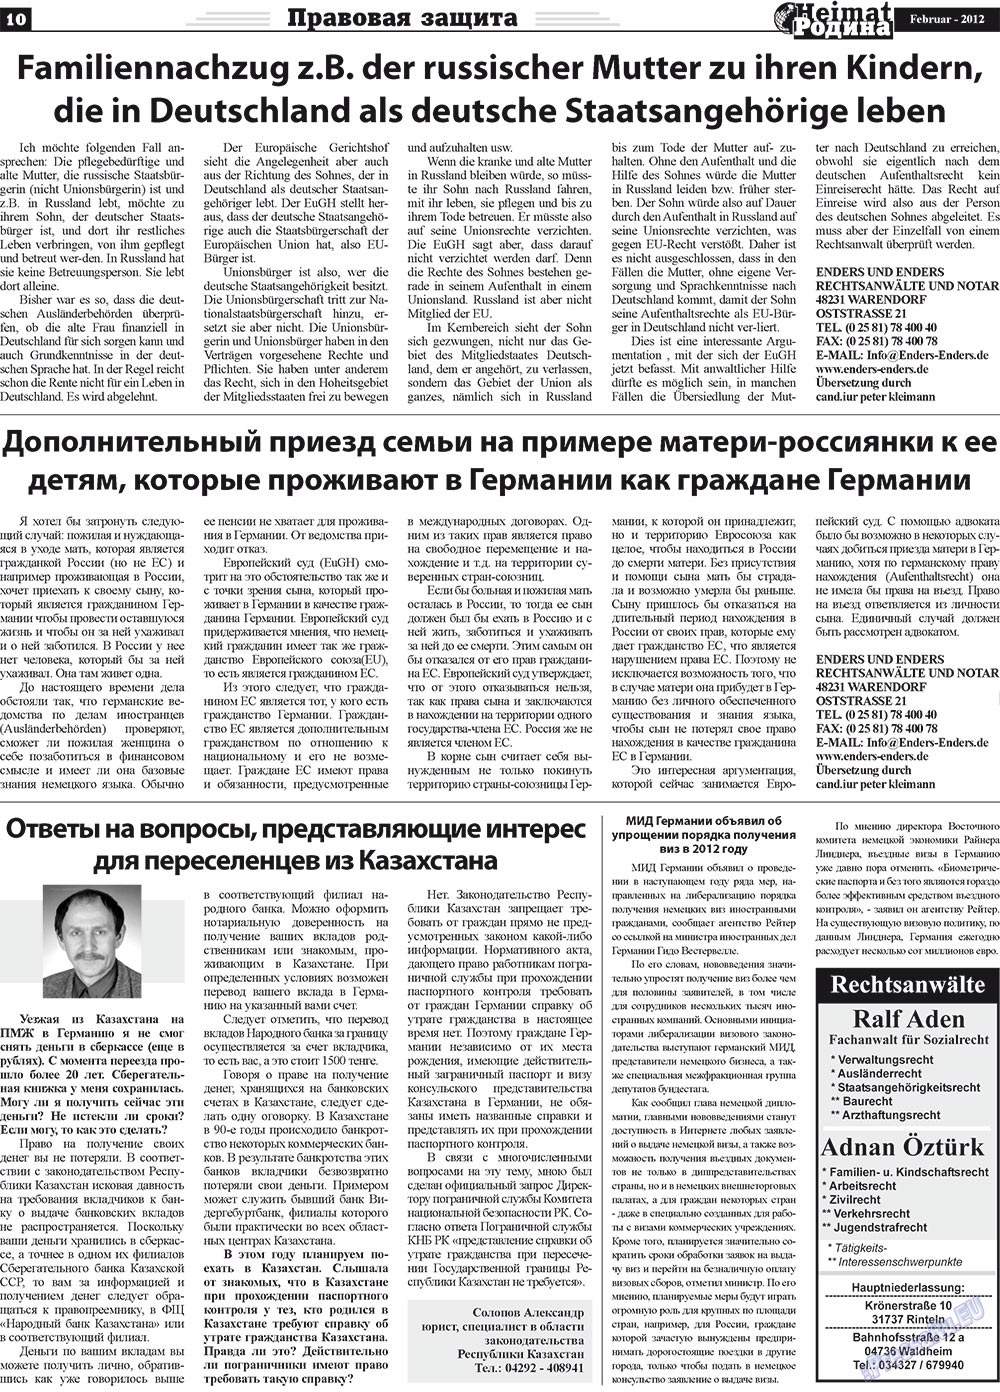 Heimat-Родина (газета). 2012 год, номер 2, стр. 10